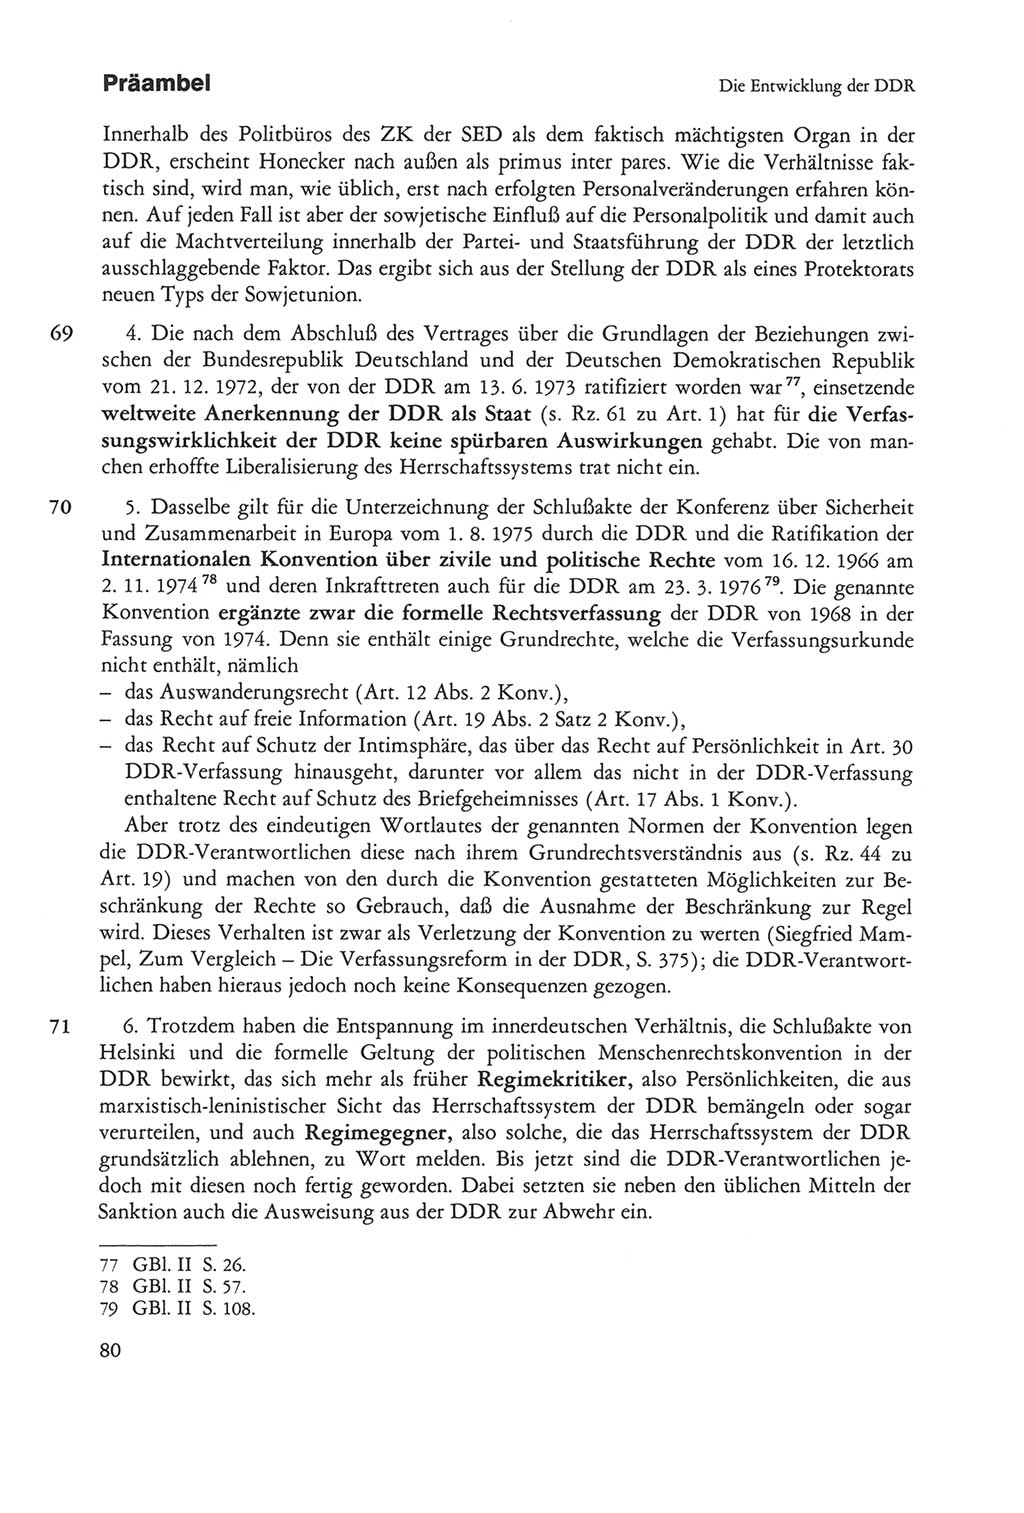 Die sozialistische Verfassung der Deutschen Demokratischen Republik (DDR), Kommentar mit einem Nachtrag 1997, Seite 80 (Soz. Verf. DDR Komm. Nachtr. 1997, S. 80)